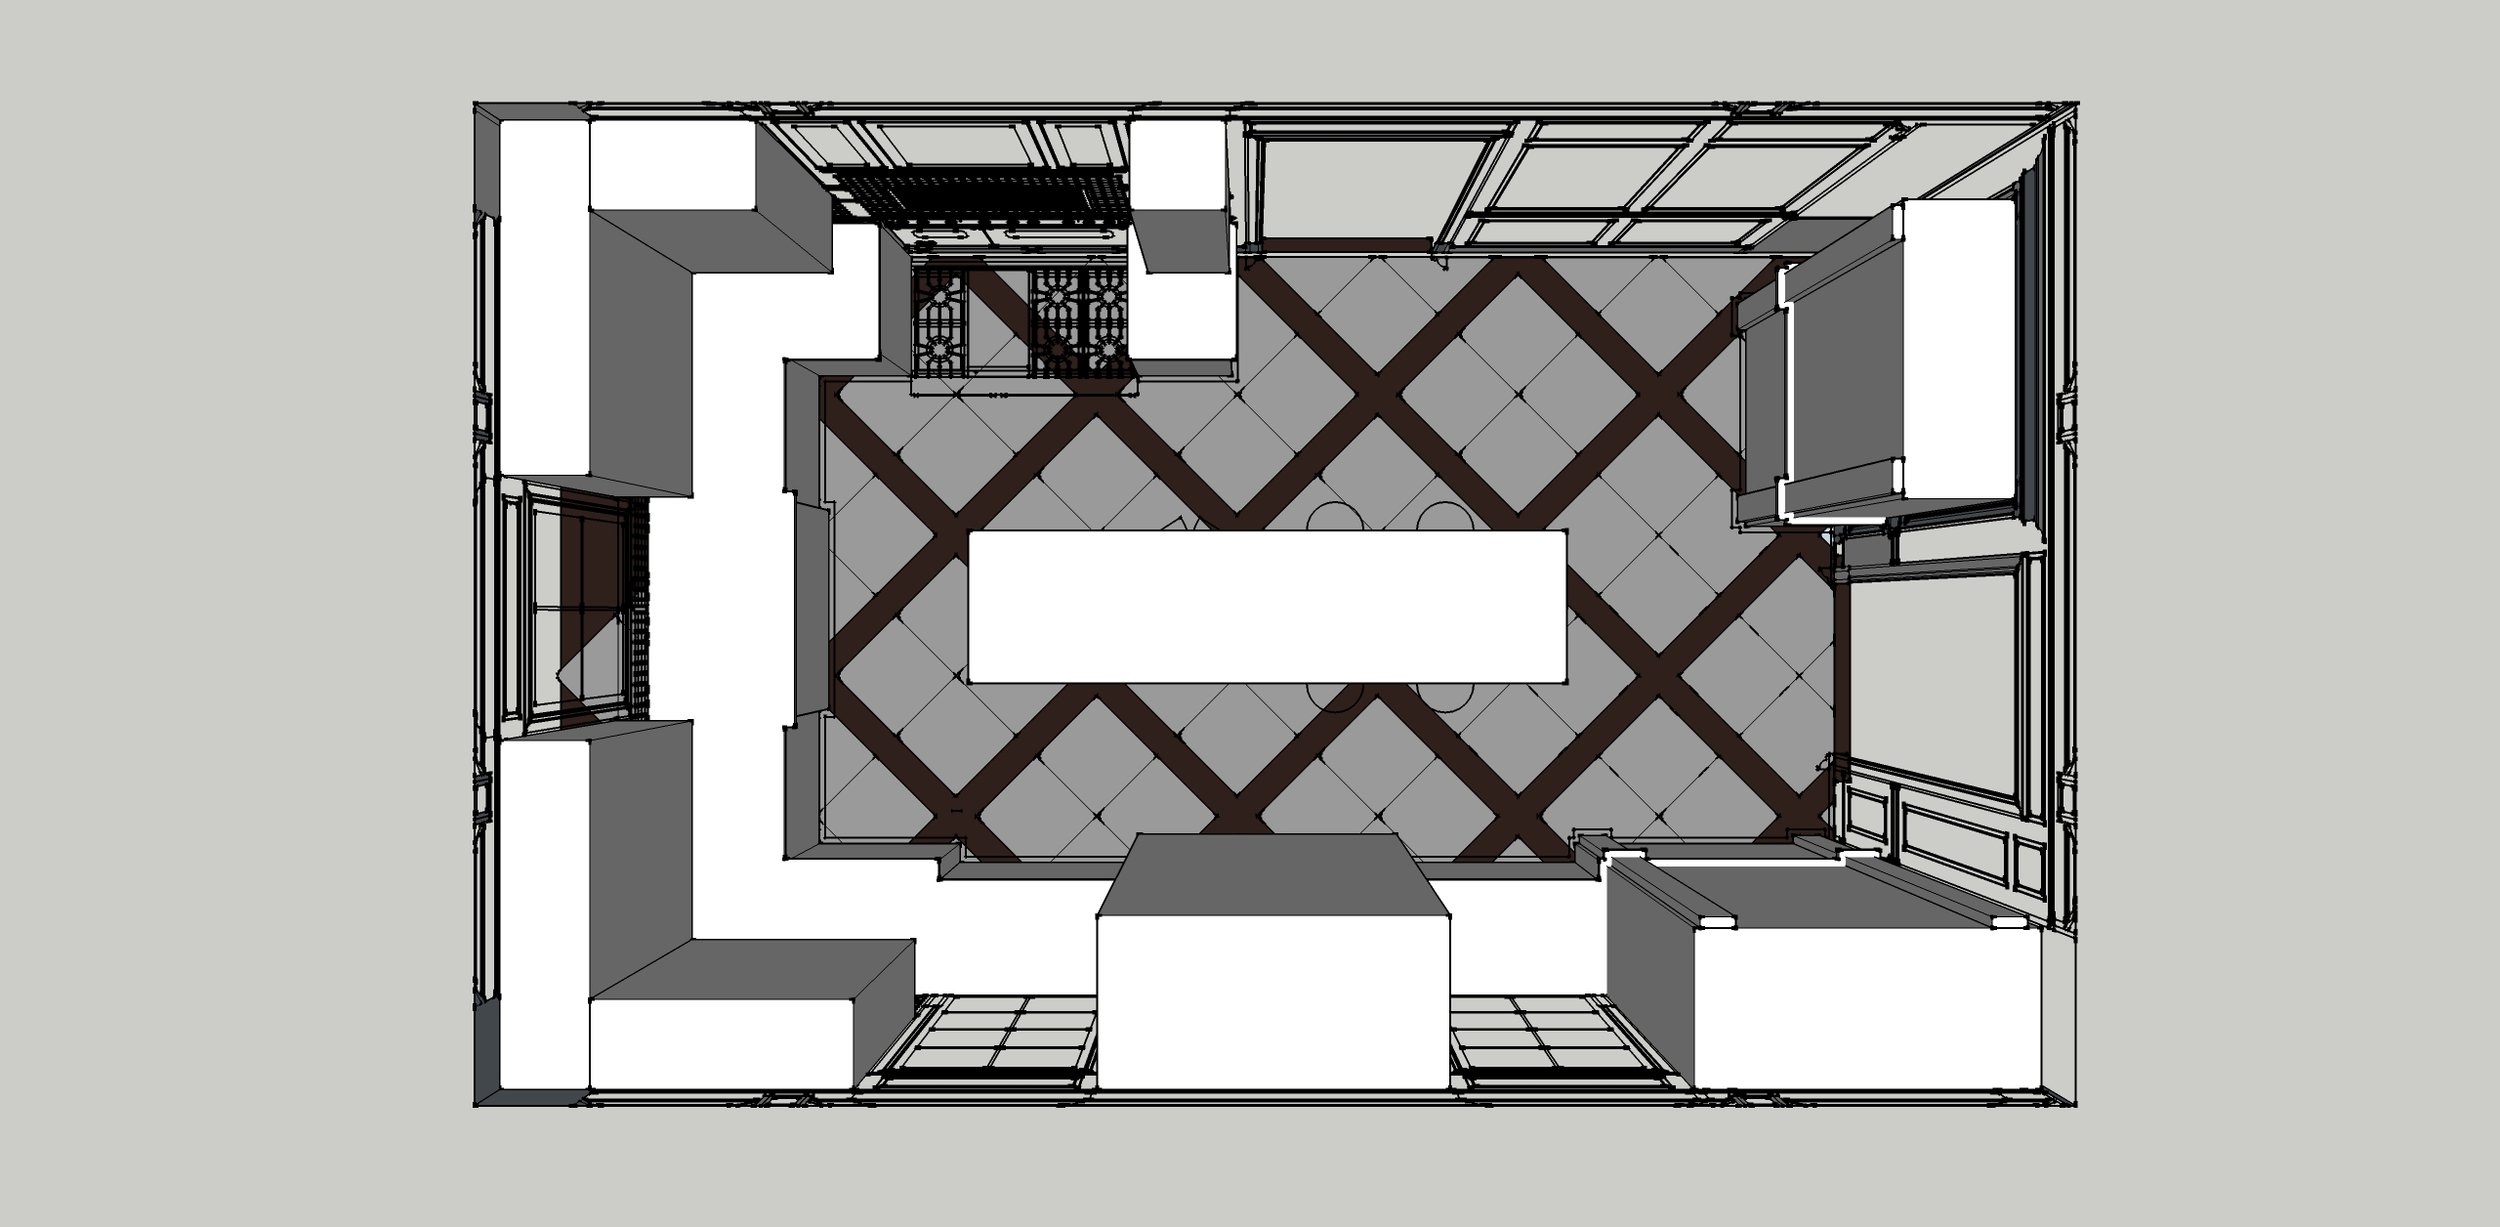 Davis_Kitchen_floor layout_Above.jpg